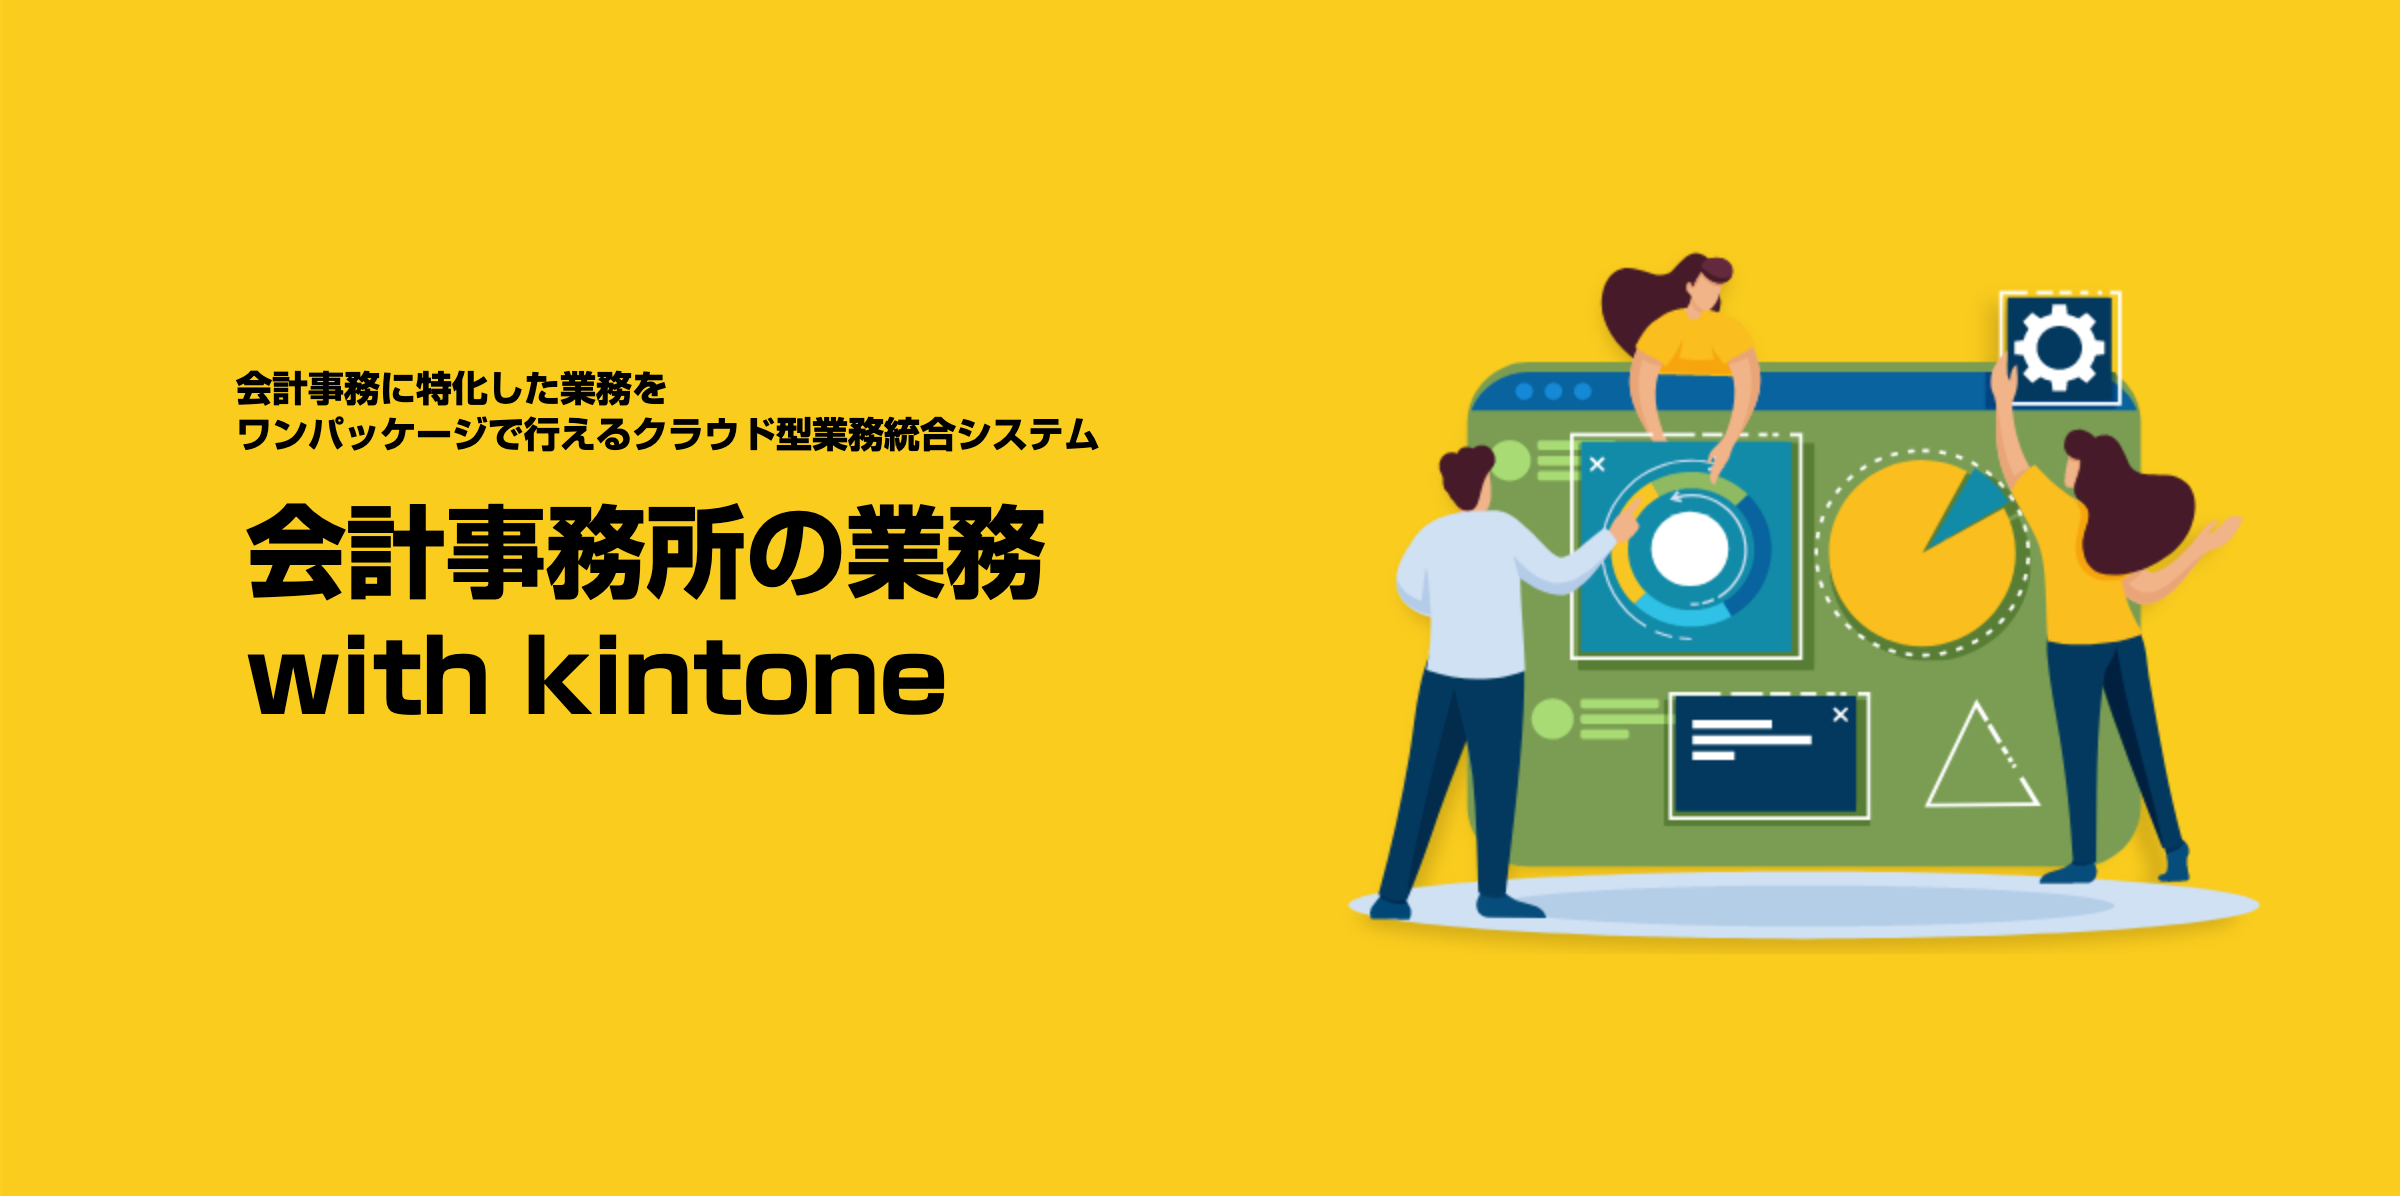 会計事務所の業務 with kintone のメイン画像